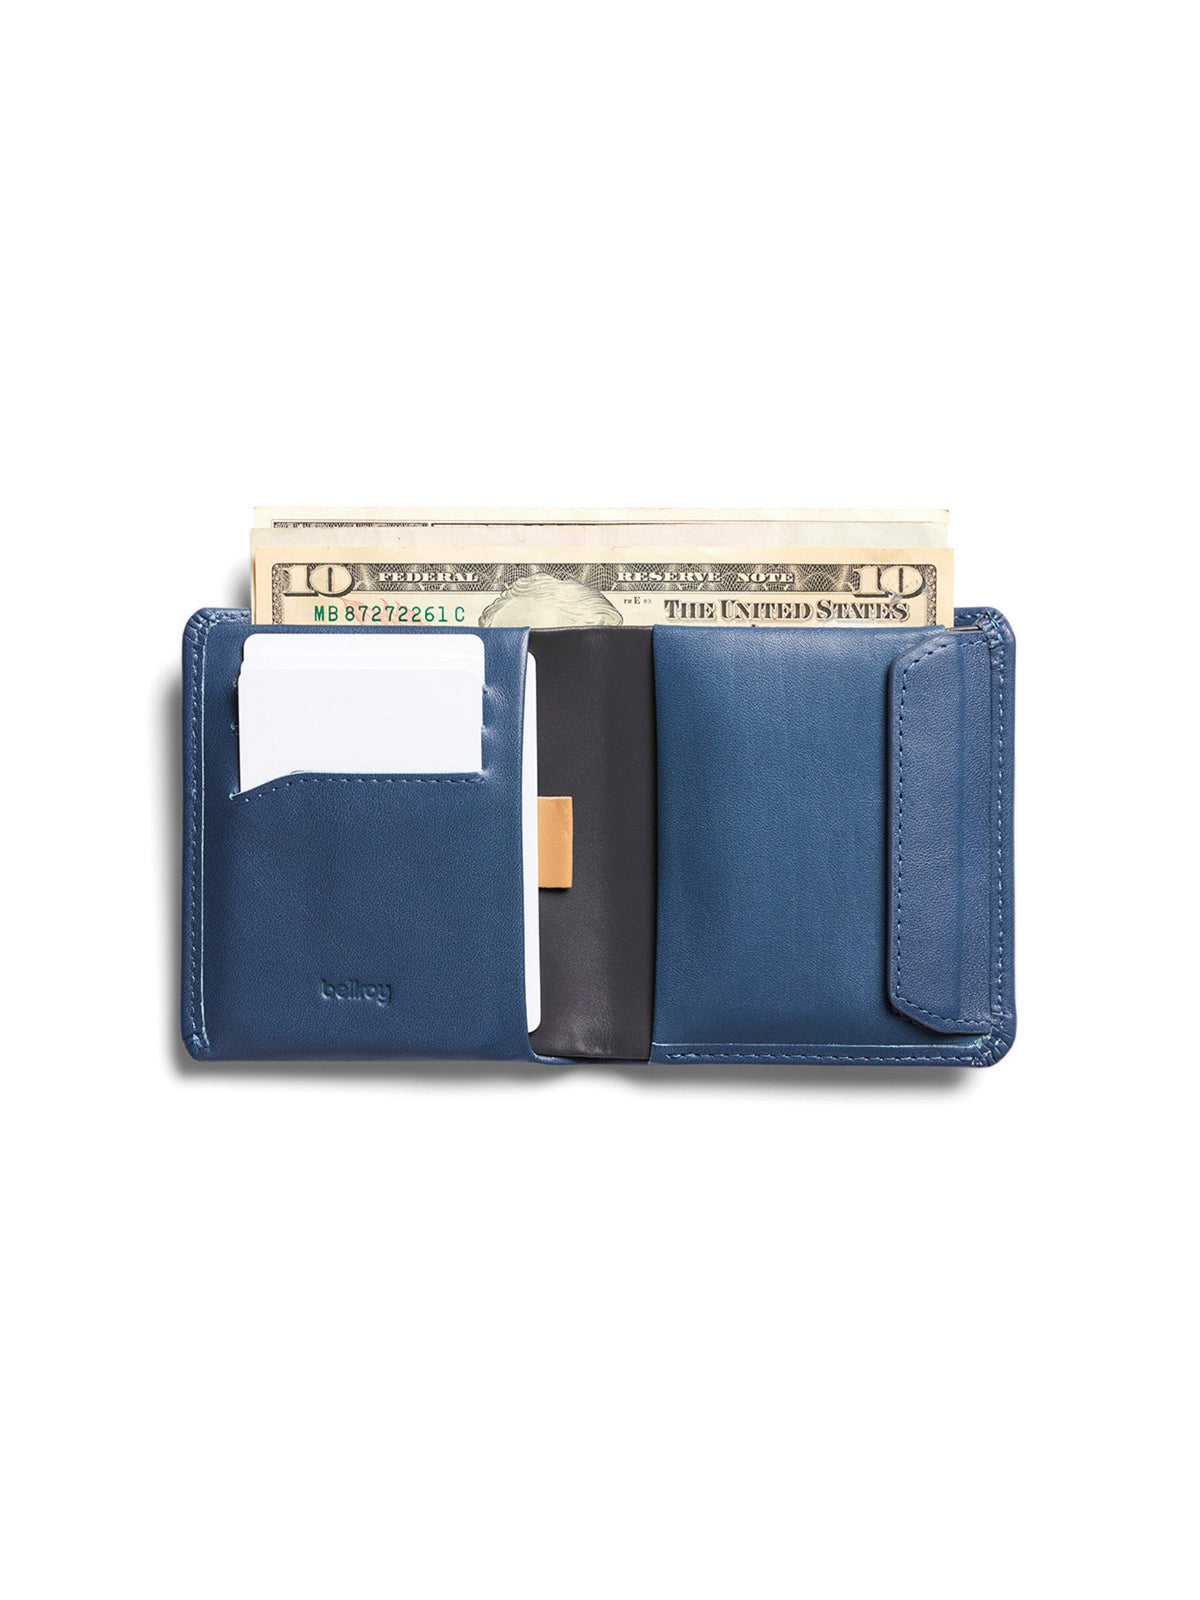 Bellroy Coin Wallet Marine Blue RFID